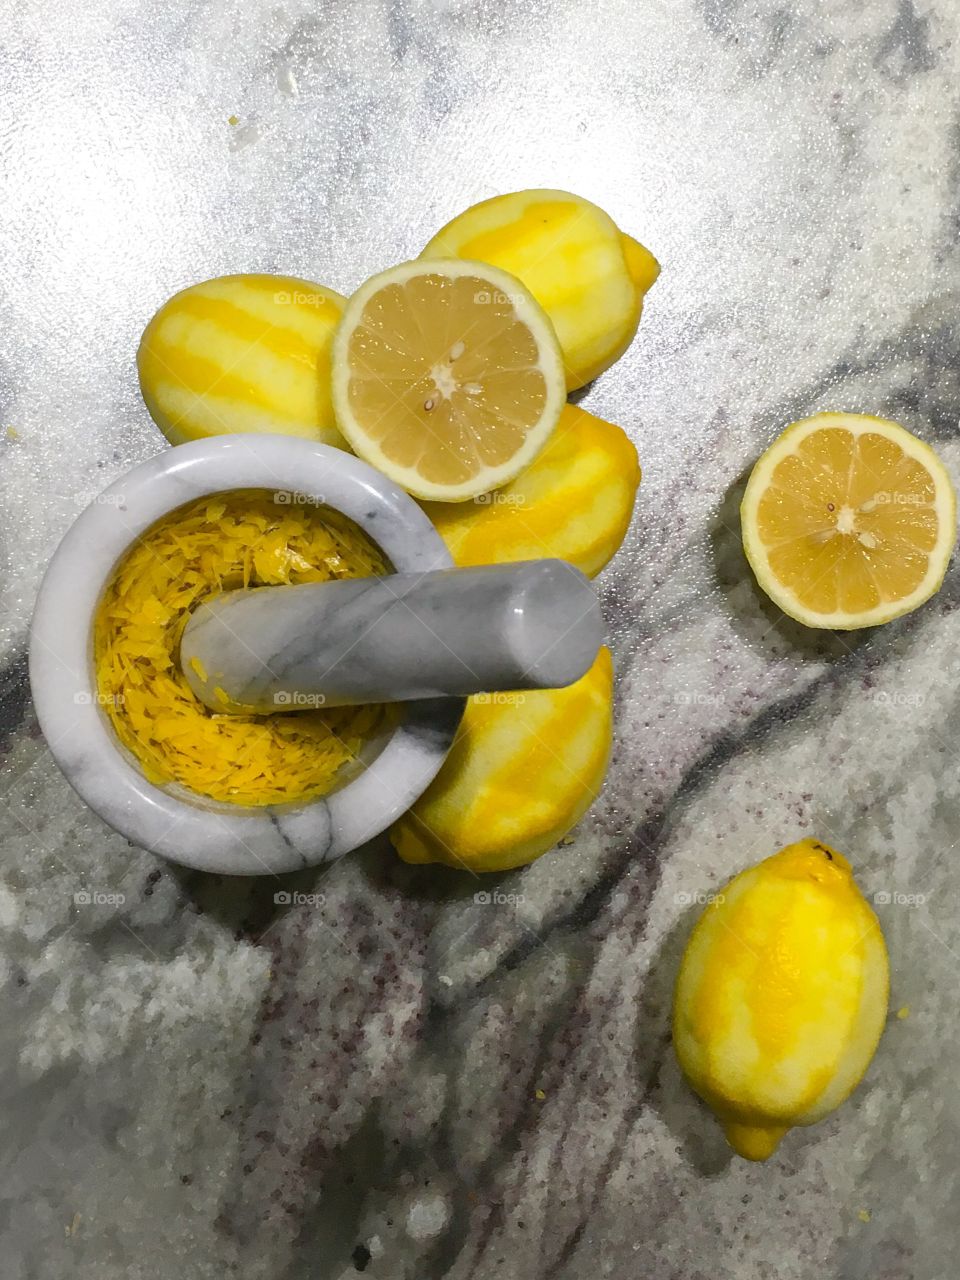 Lemons with mortar and pestle